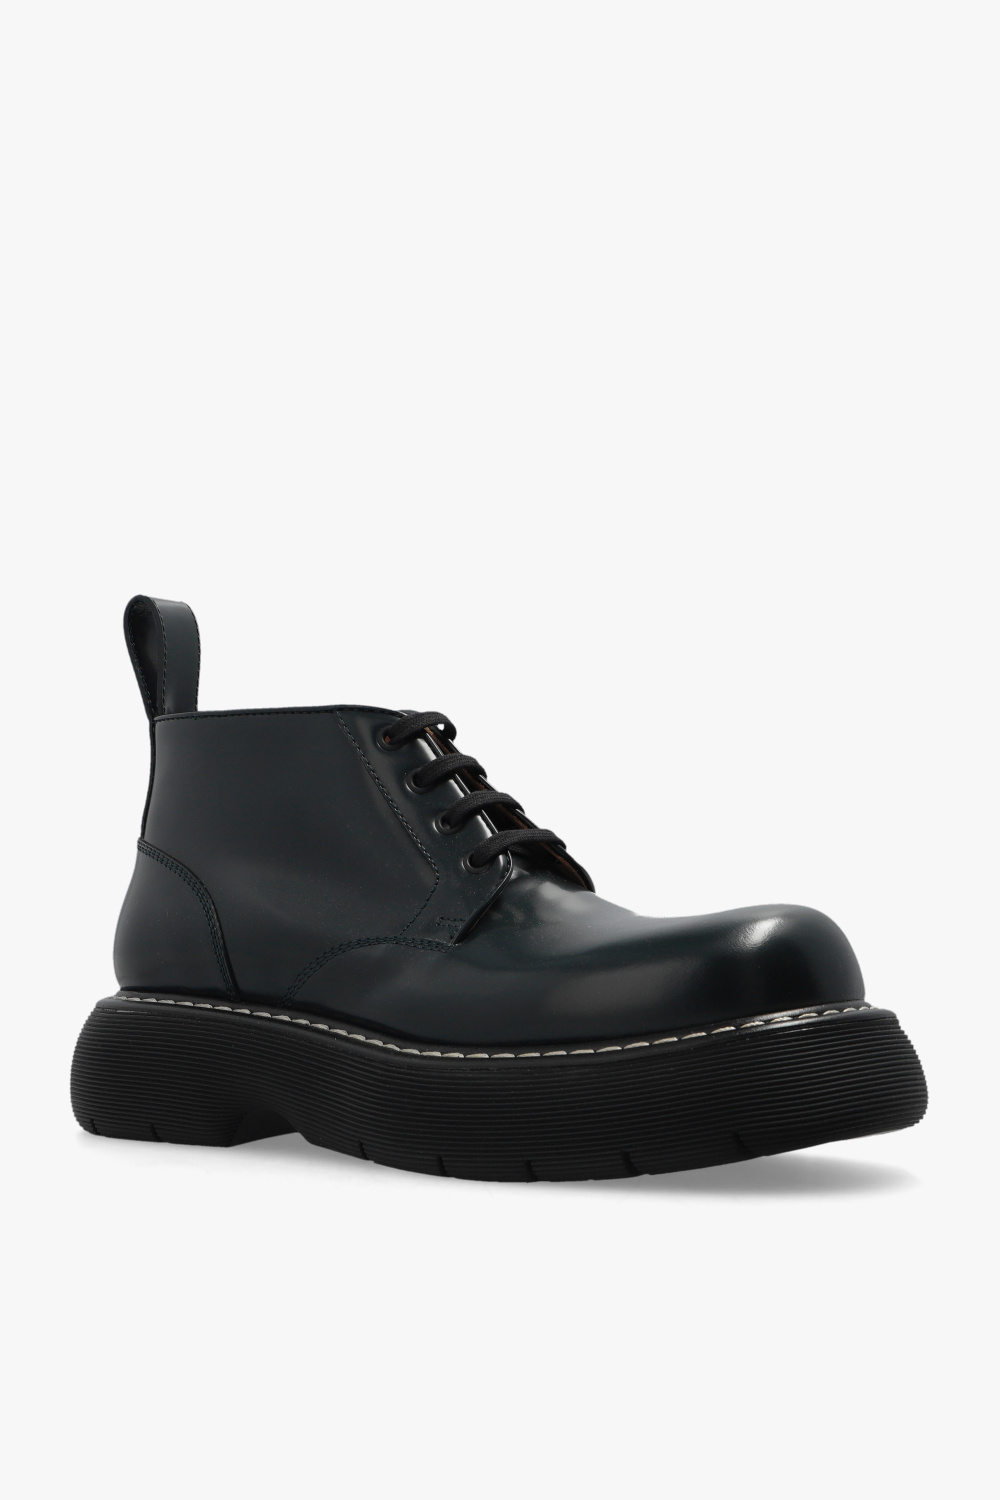 Bottega Veneta ‘Swell’ shoes